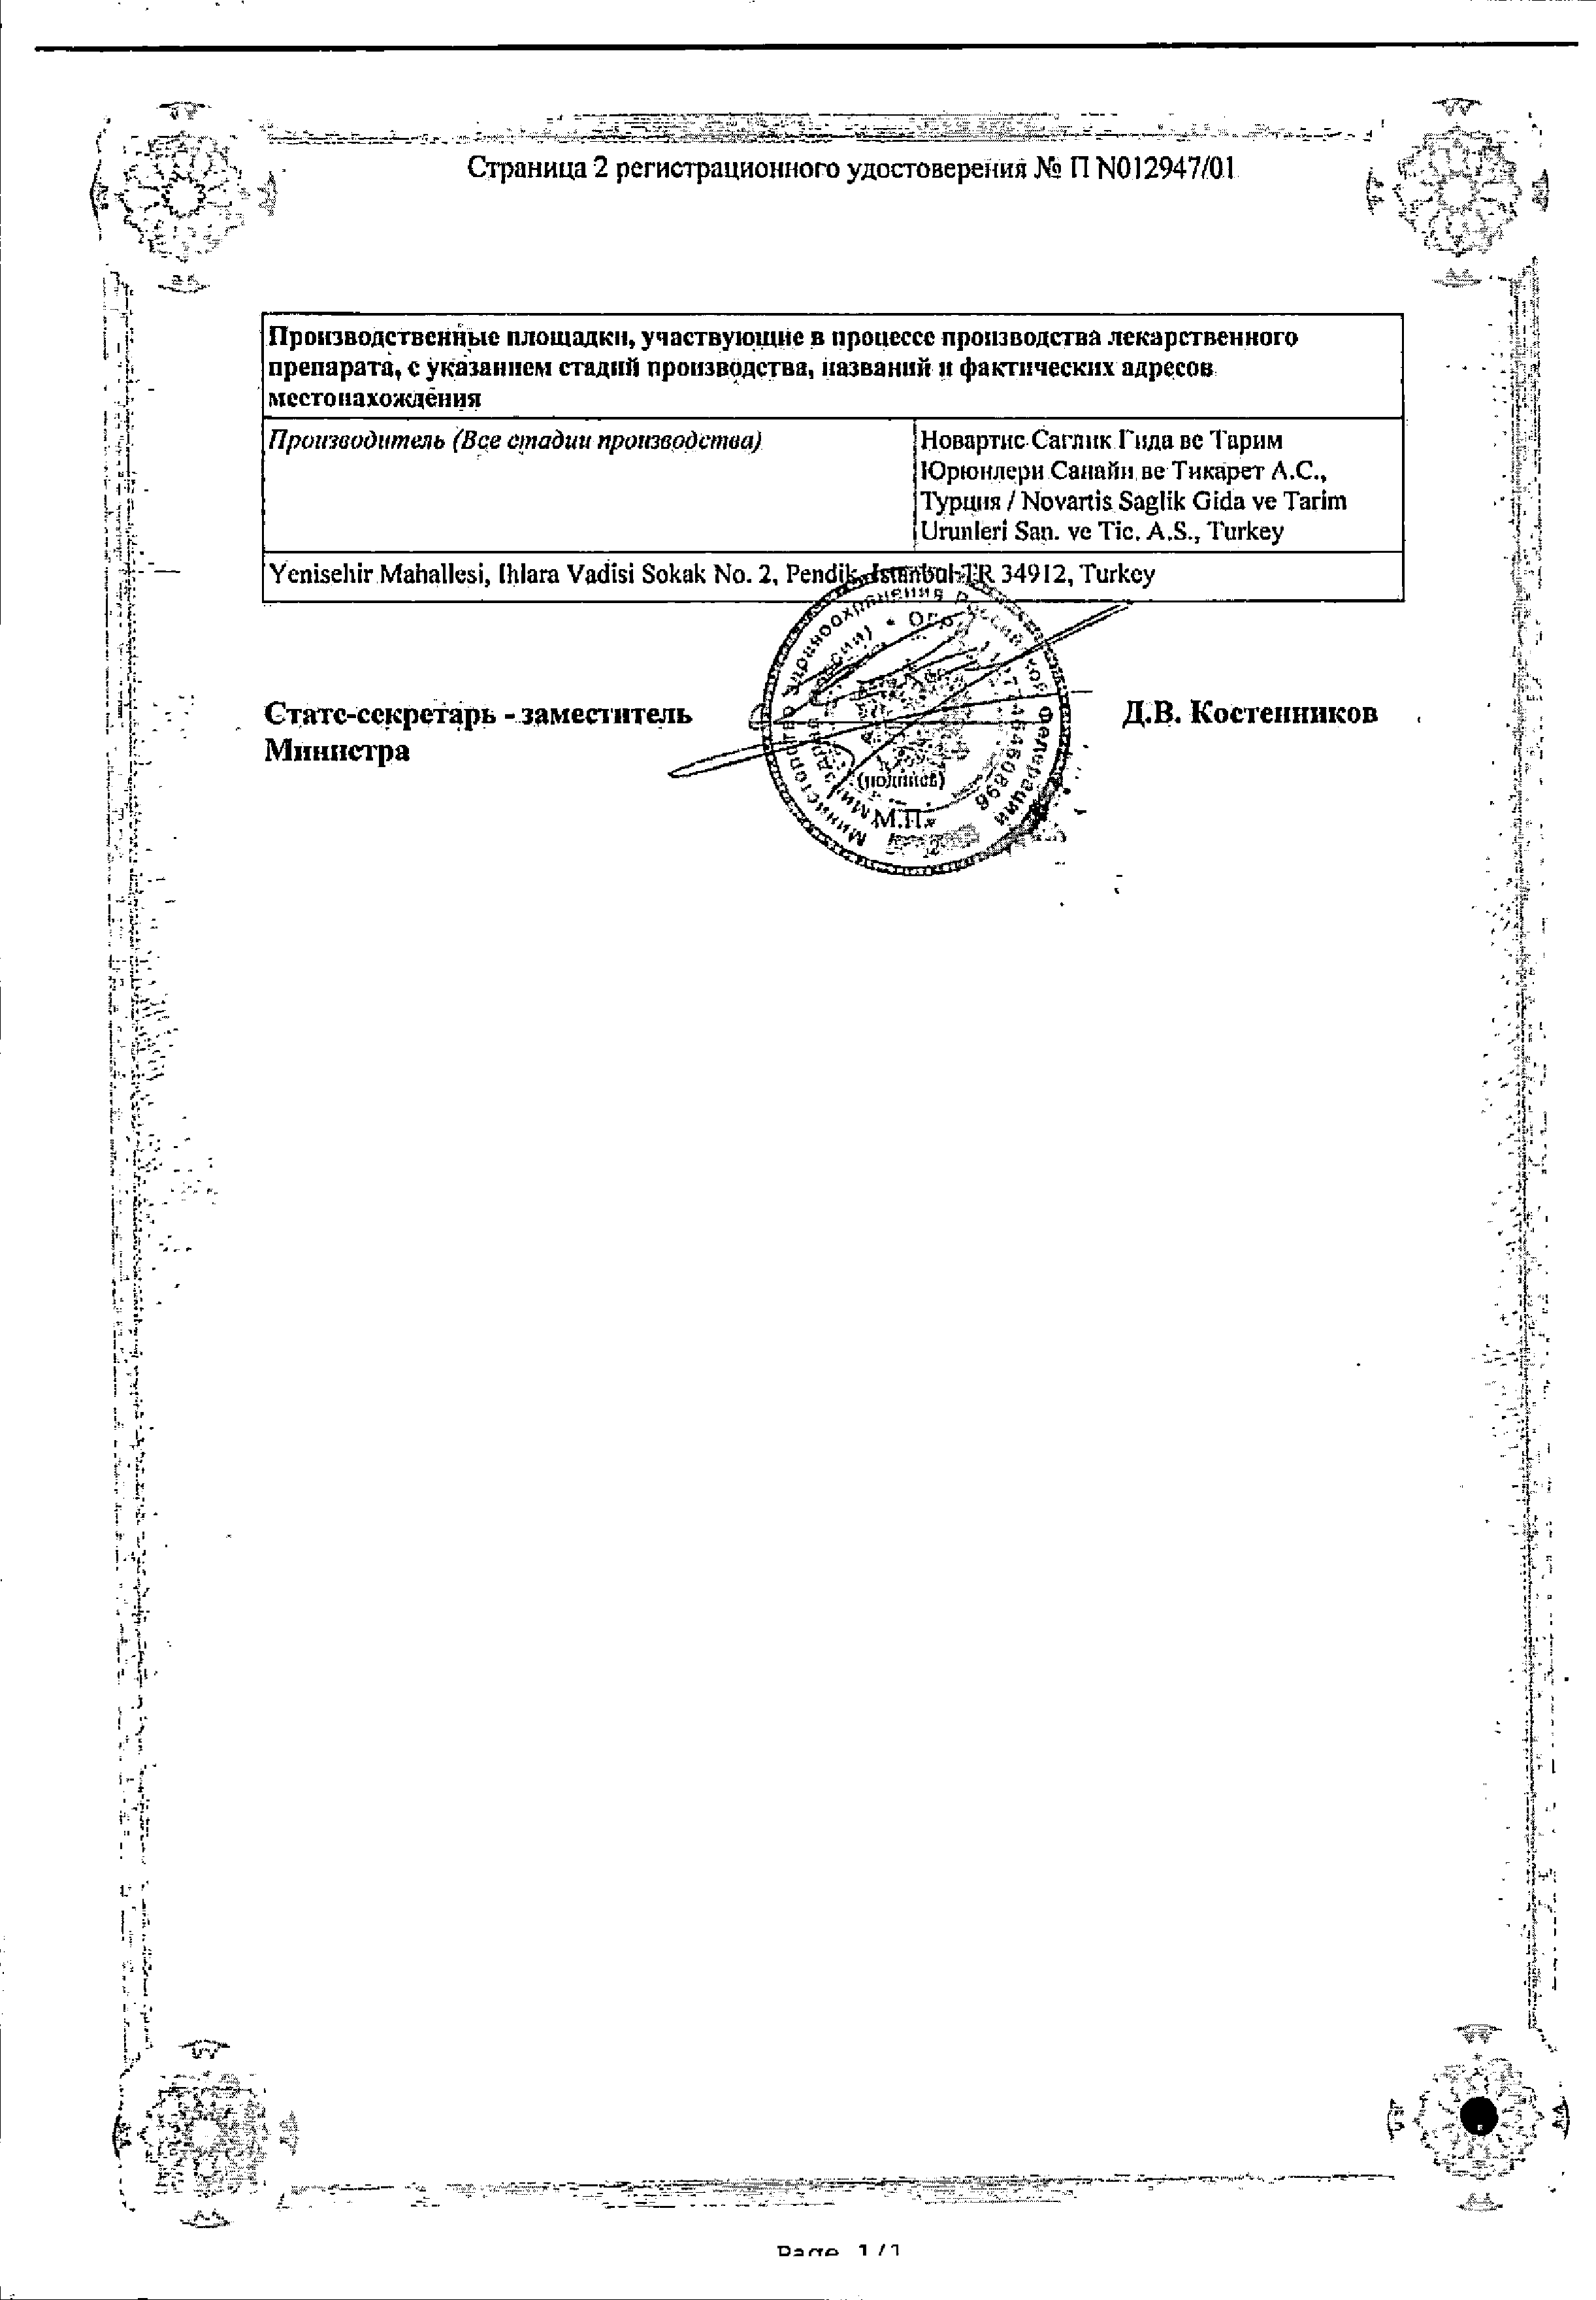 Сирдалуд сертификат